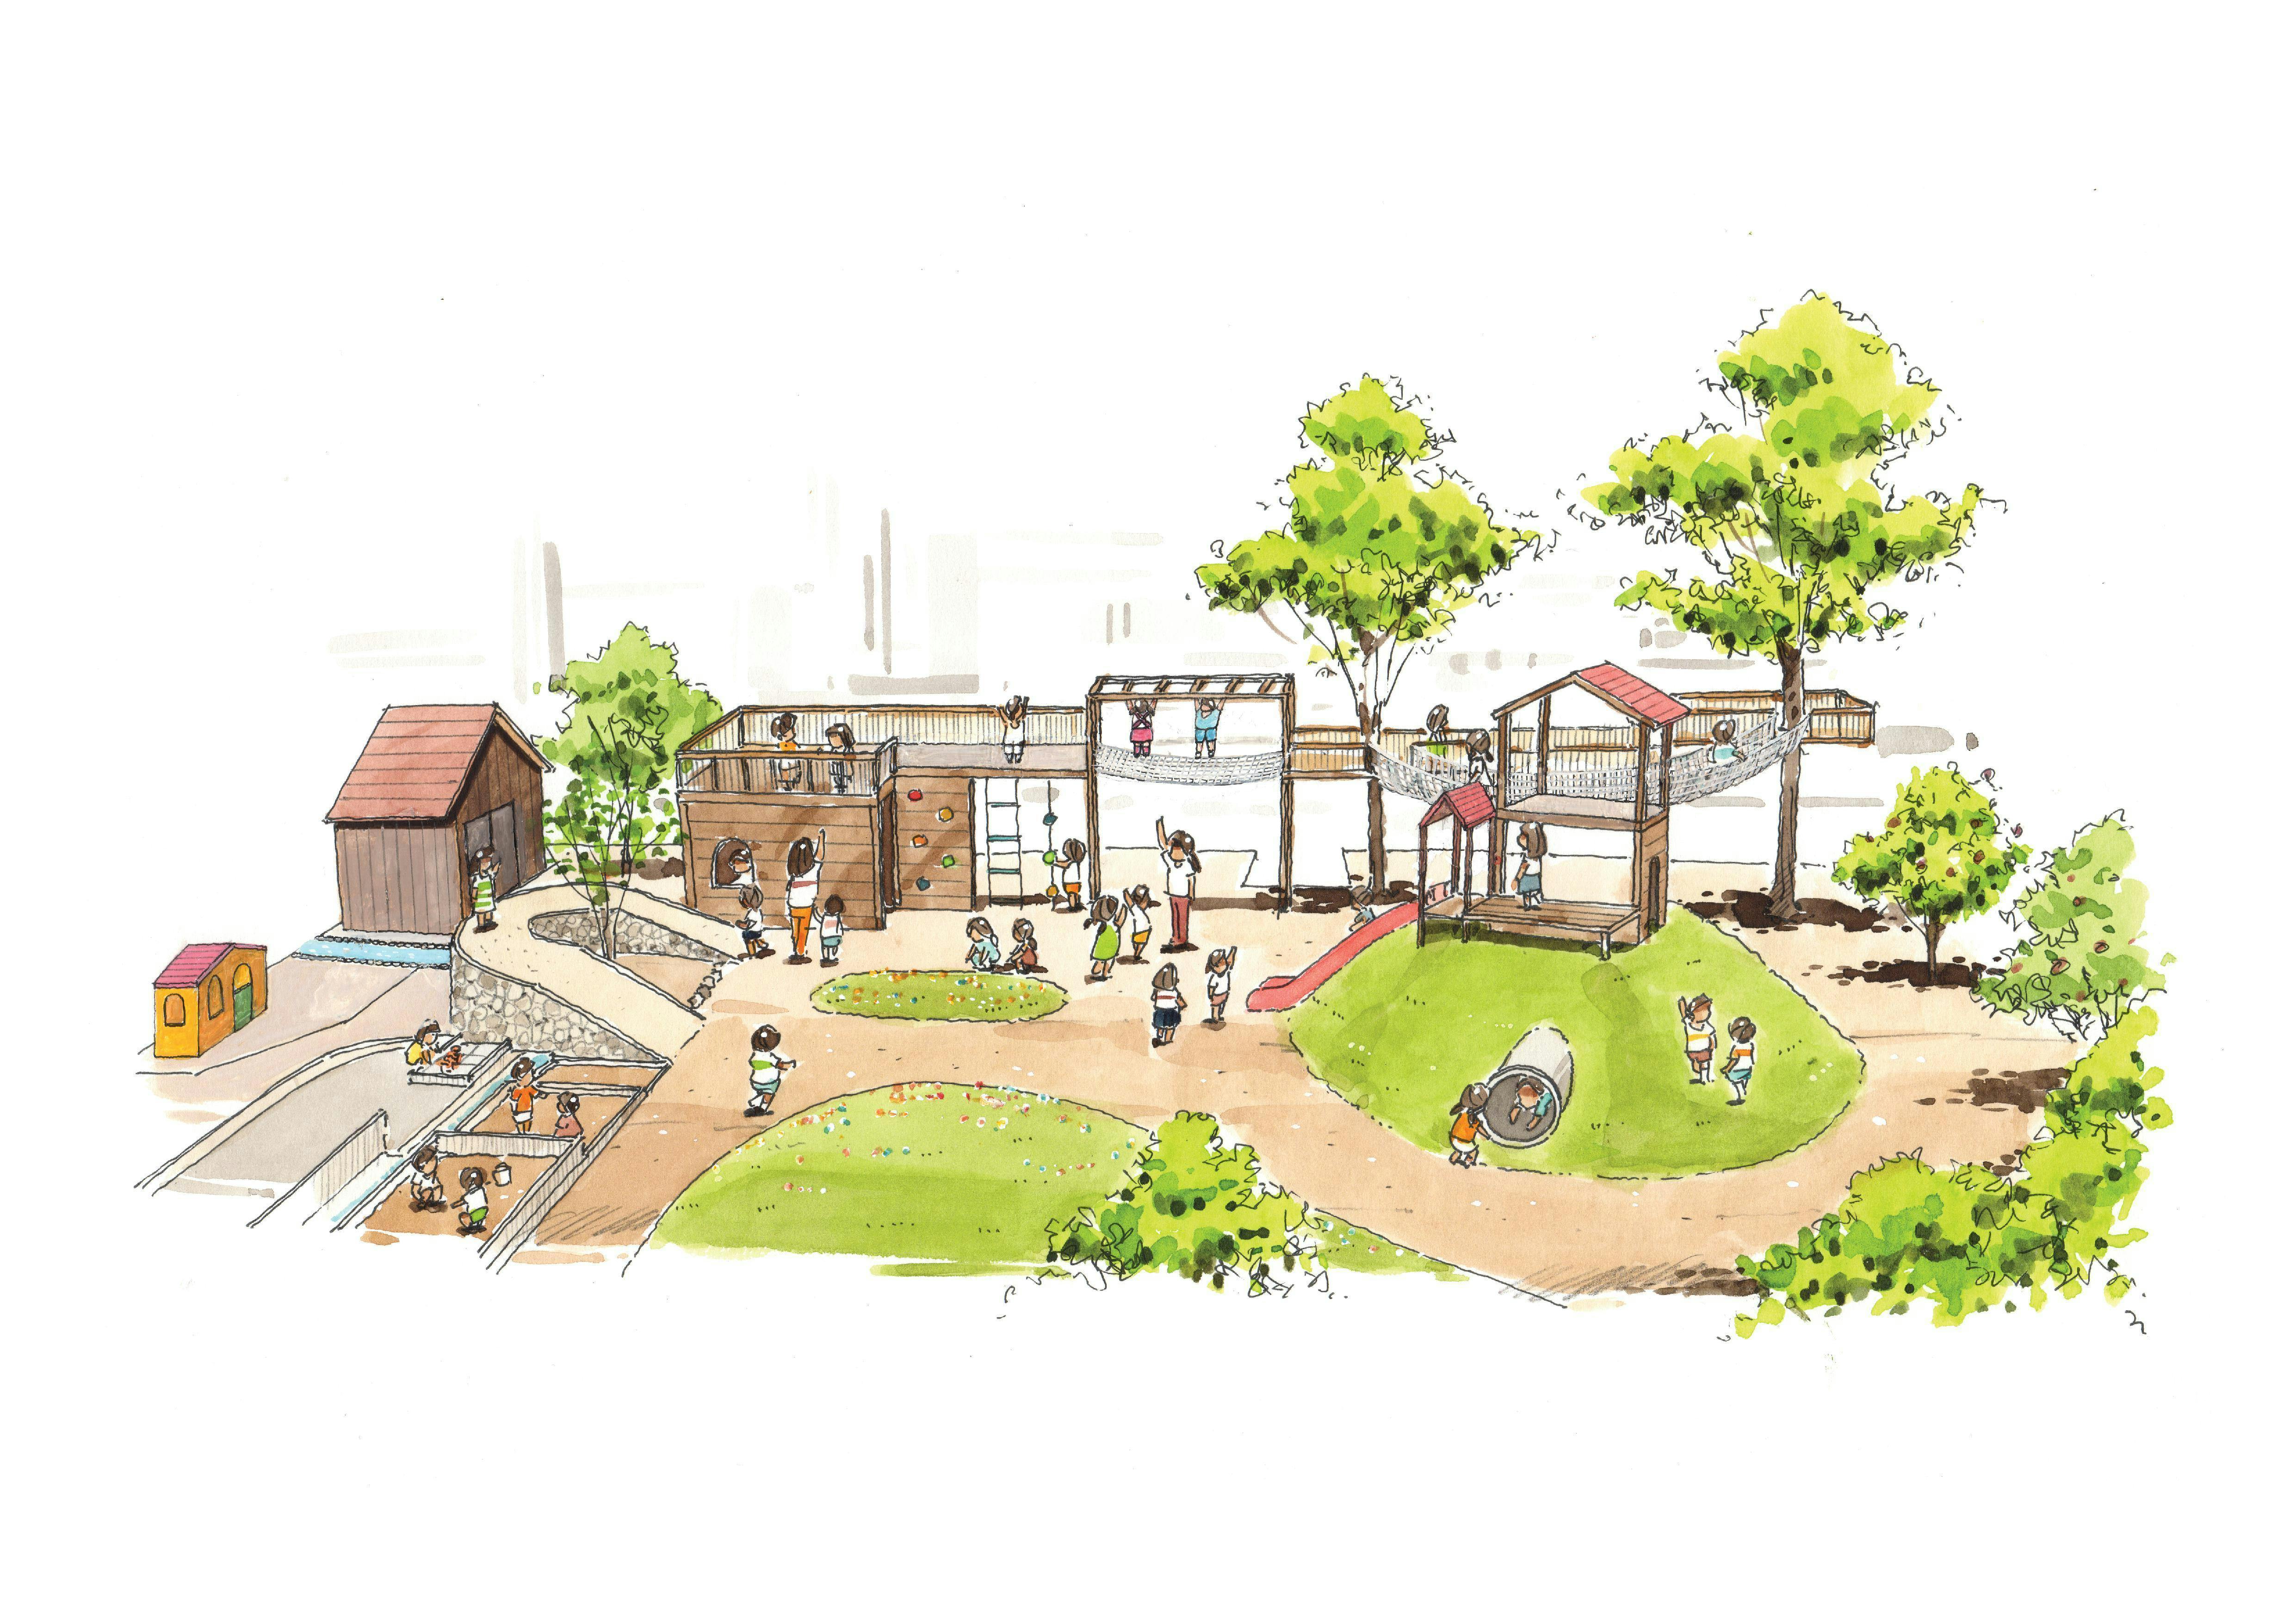 日本一の園庭を作りたい すべての子に平等な遊び 学びの場を提供するために Campfire キャンプファイヤー